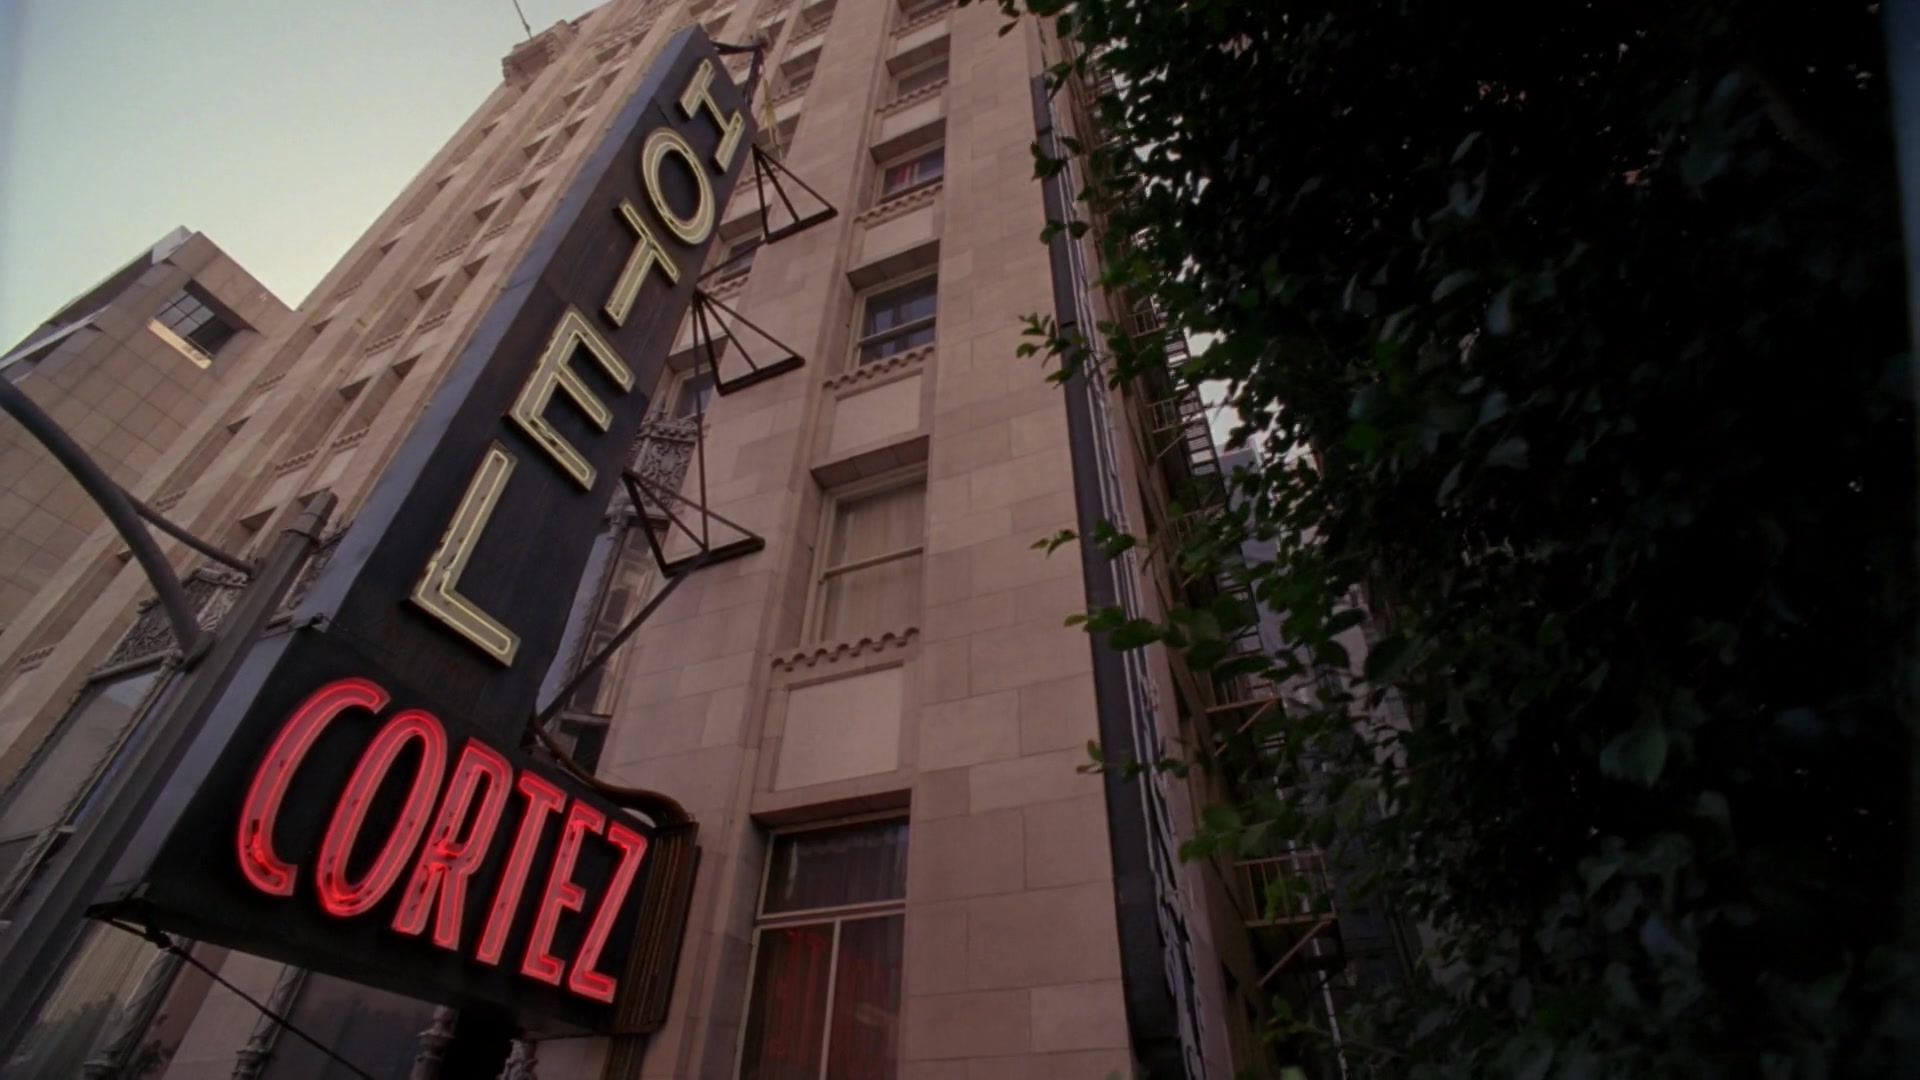 Hotel Cortez | American Horror Story Wiki | Fandom